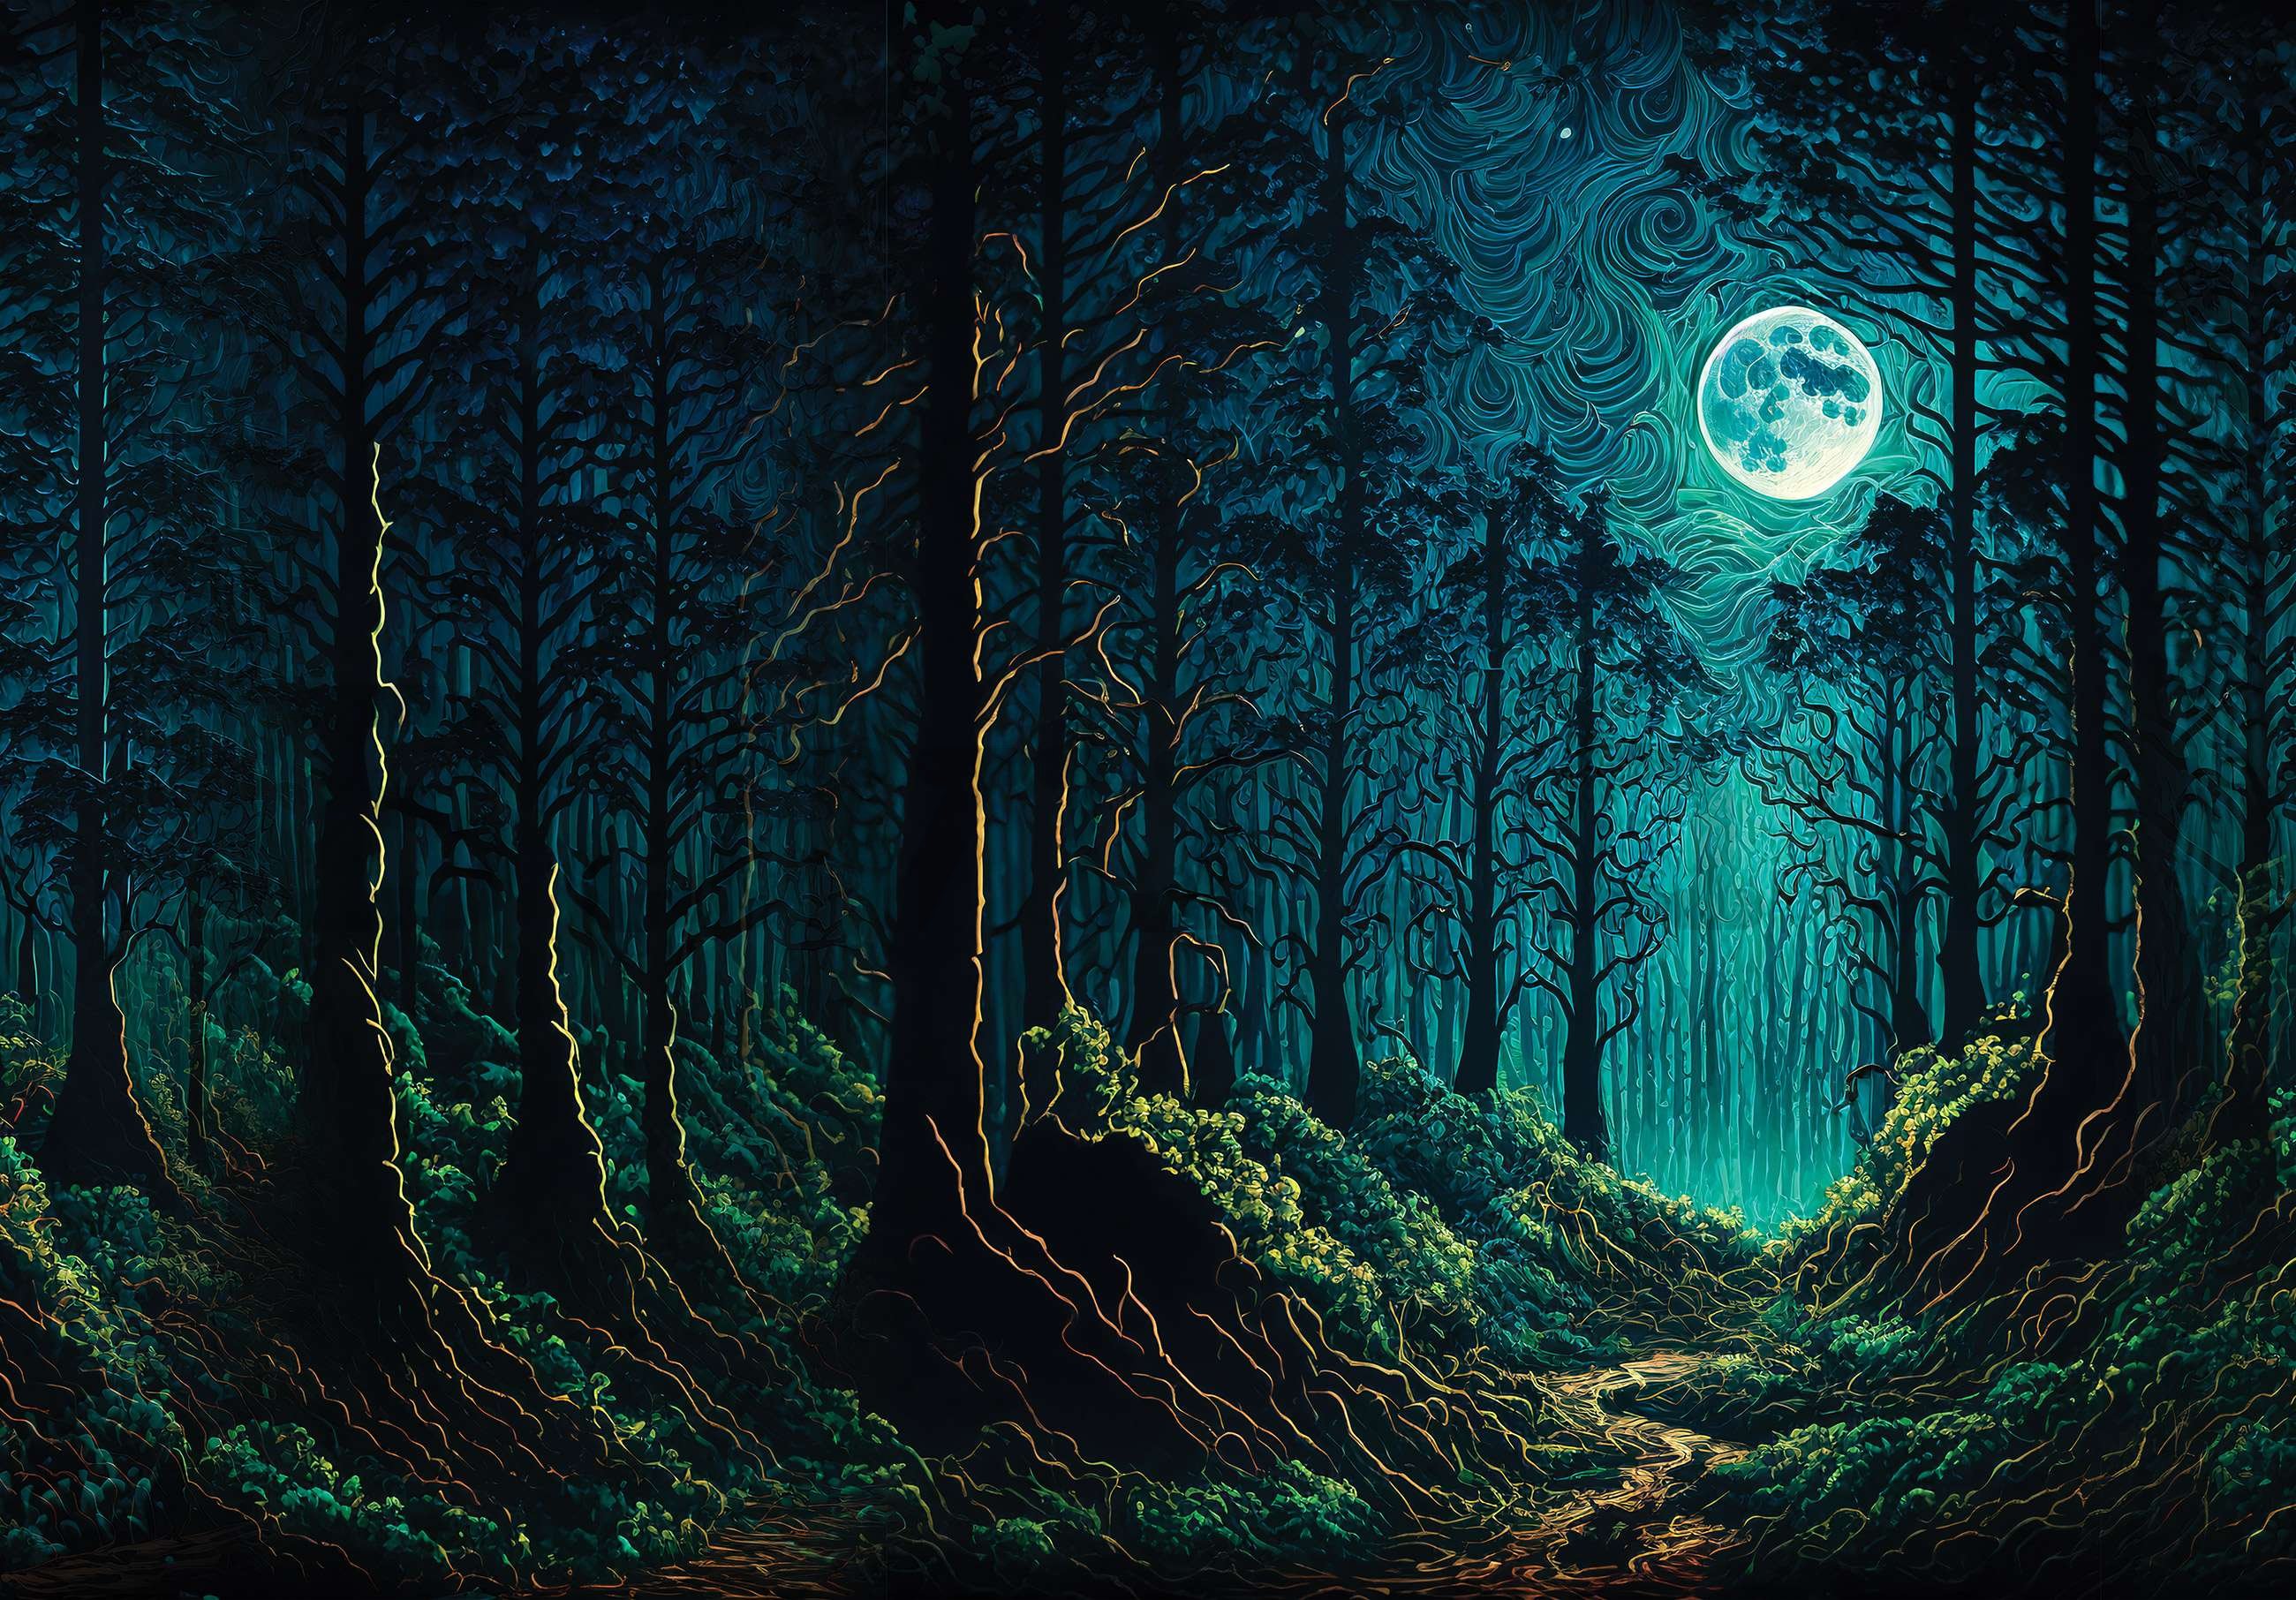 Vlies fotótapéta: Elvarázsolt erdő a holdfényben - 254x184 cm